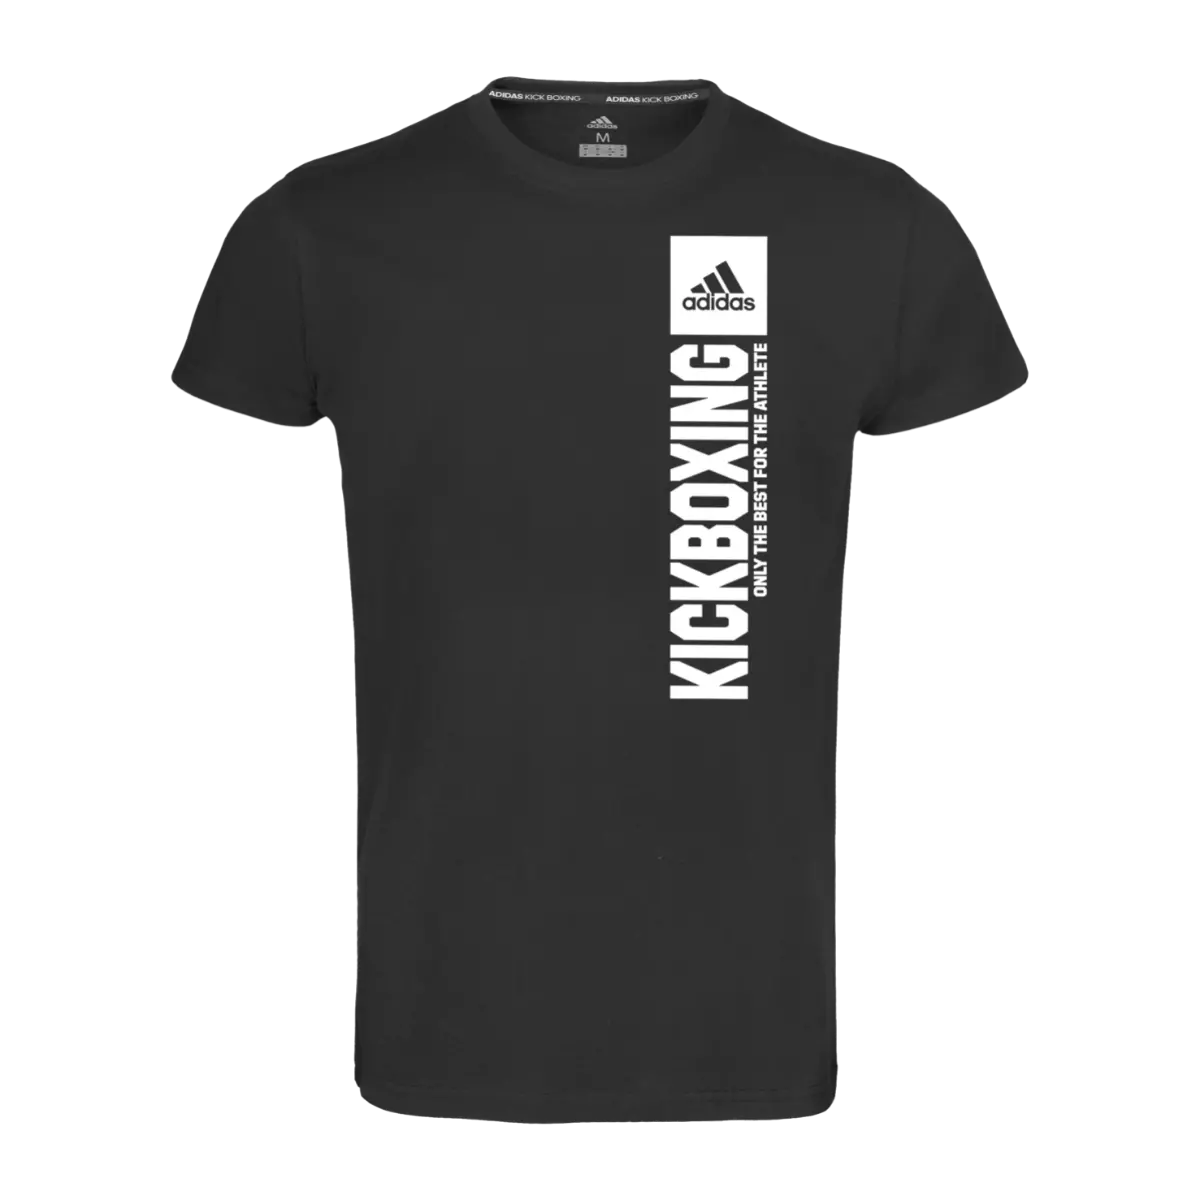 adidas Mens Tshirt for Kickboxing Black